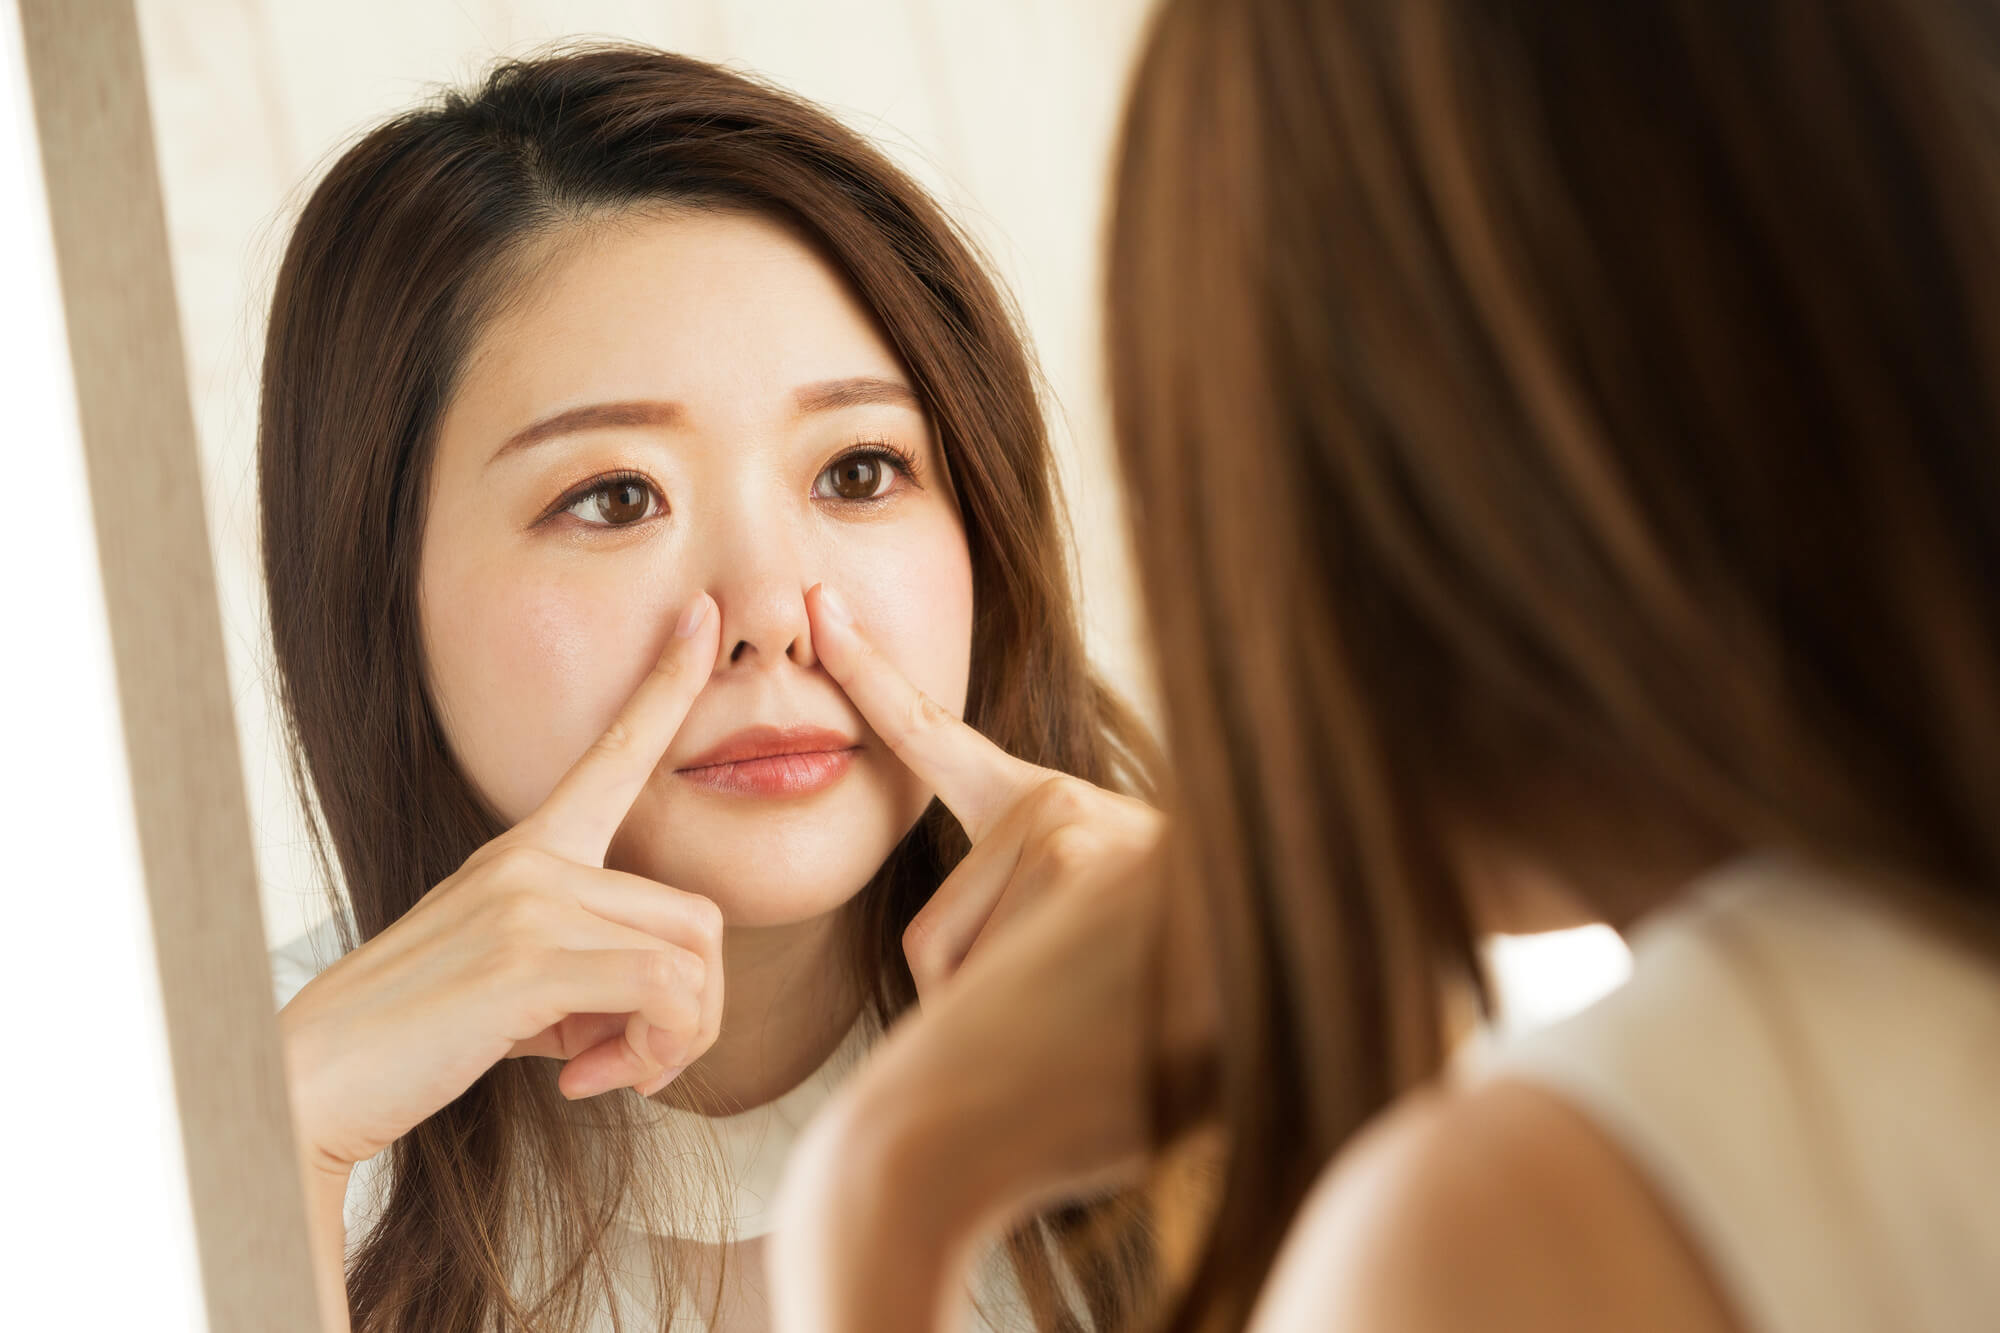 団子鼻の原因や悪化する生活習慣、団子鼻を解消する方法